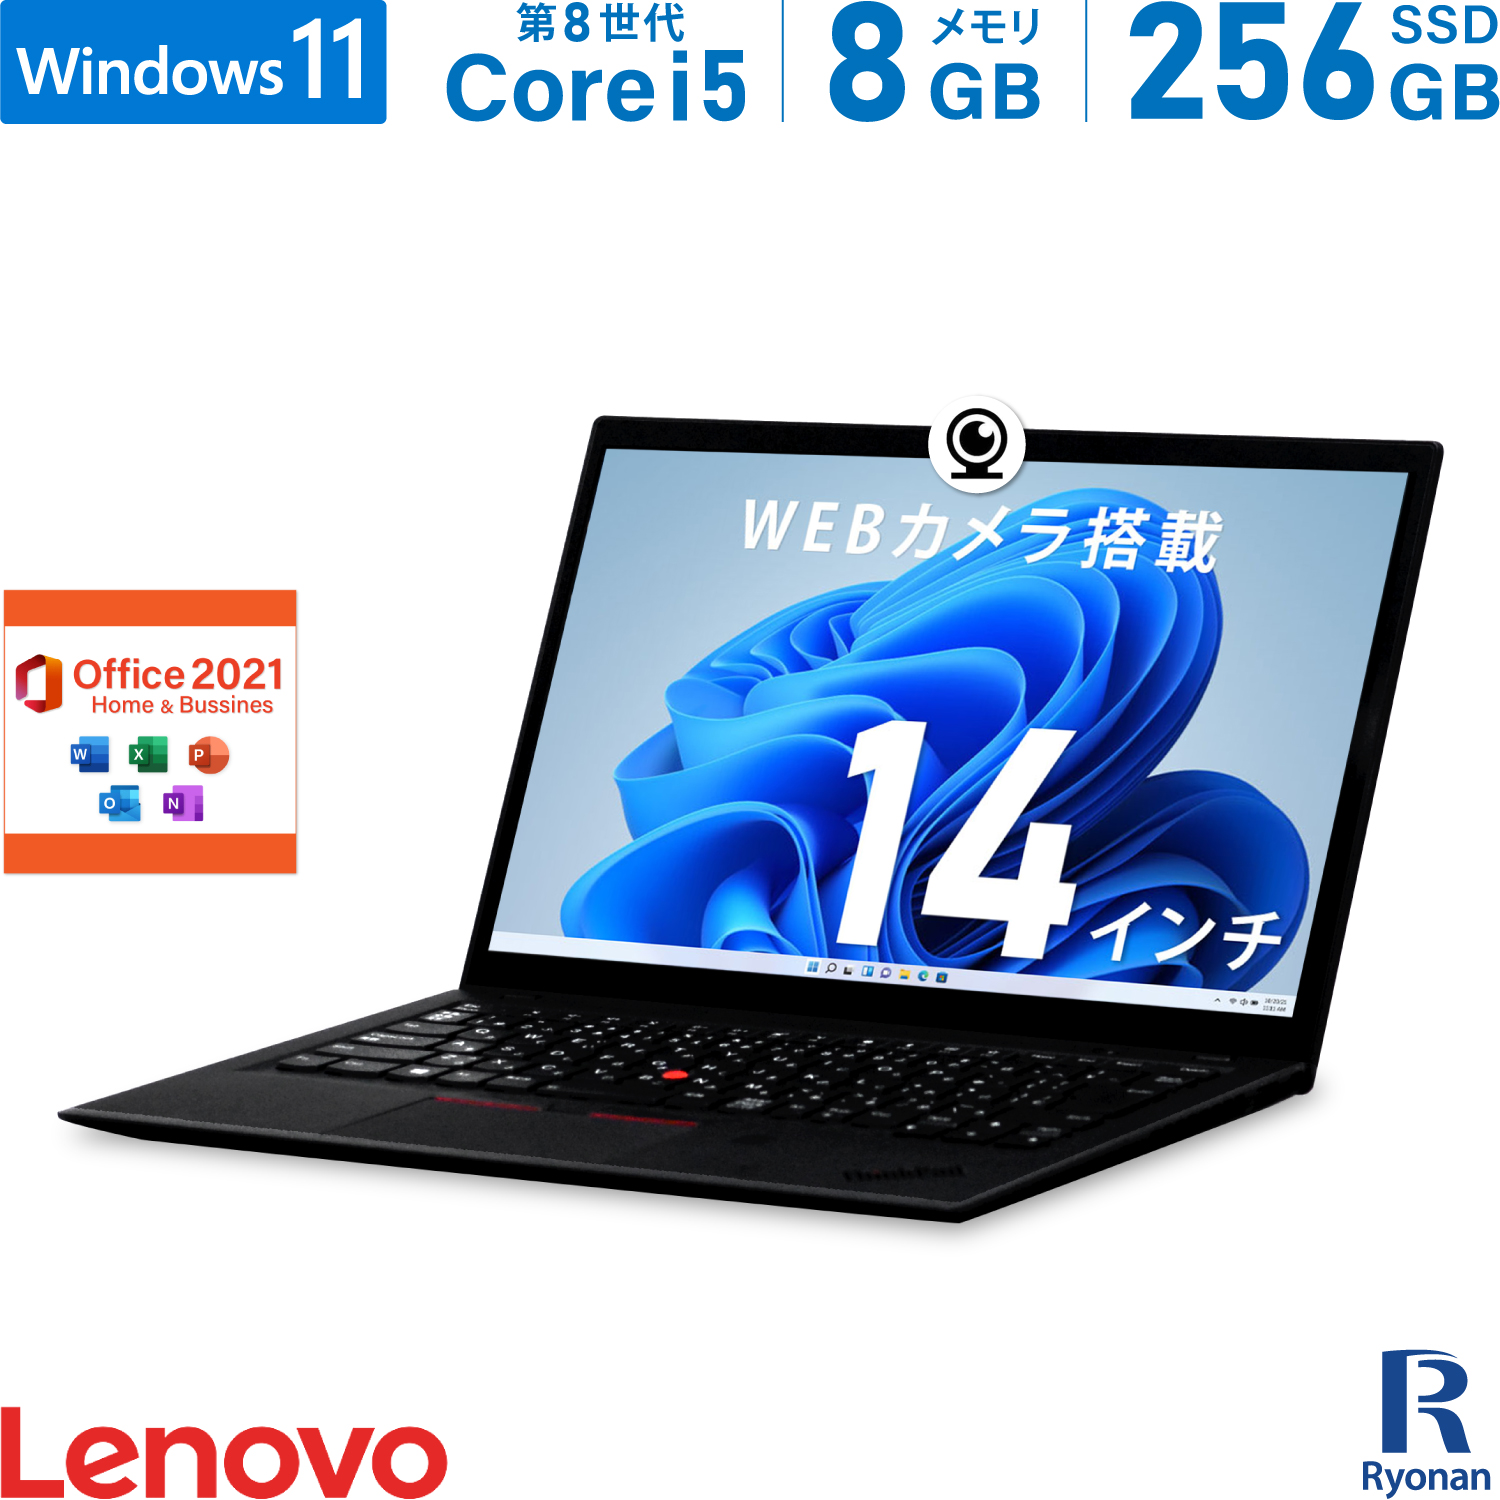 【楽天市場】Lenovo ThinkPad X1 Carbon 高性能ノートパソコン 第 